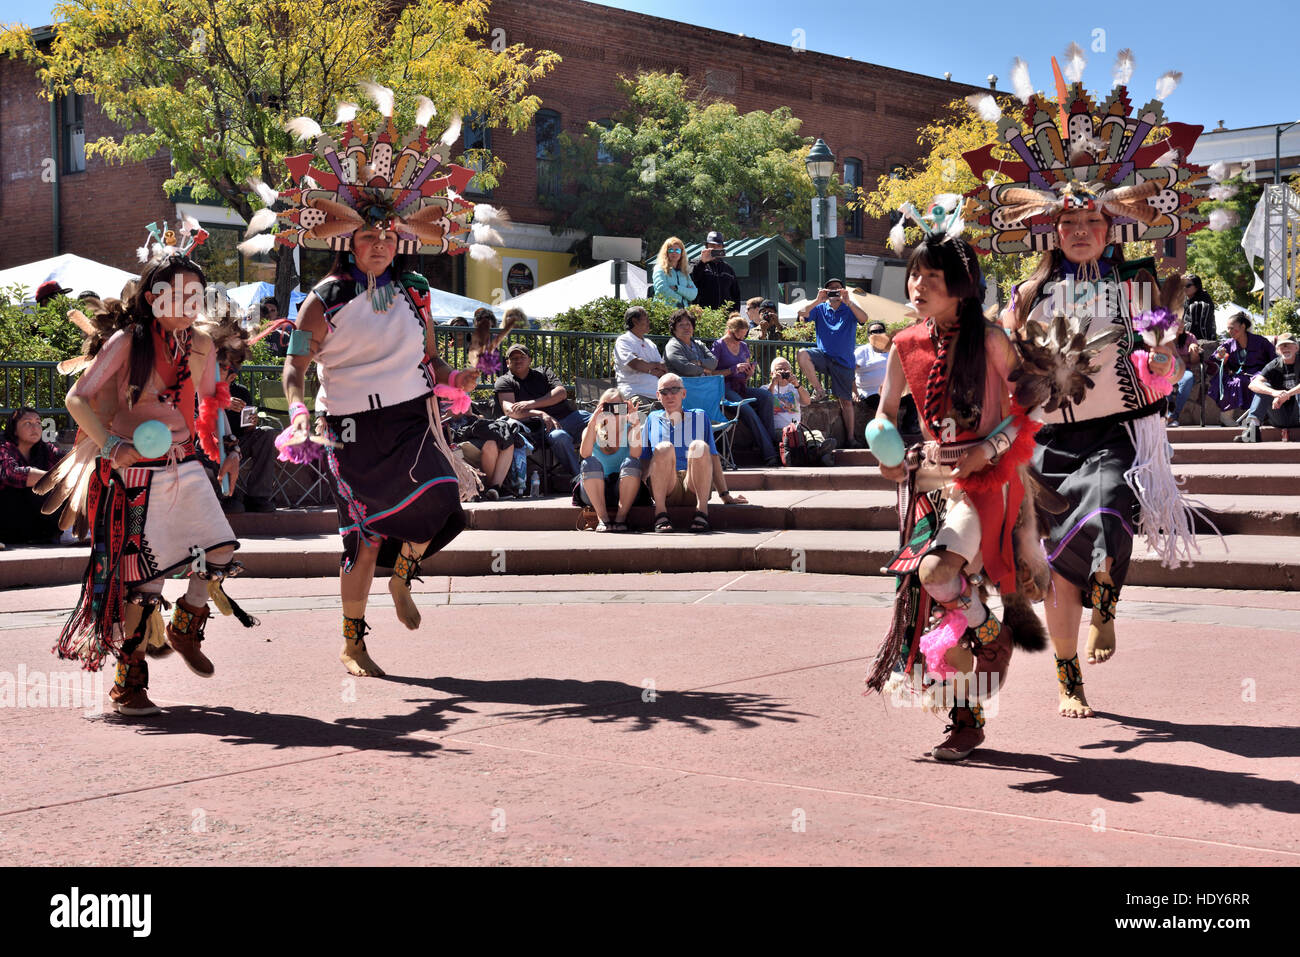 Les Indiens hopi d'effectuer une danse traditionnelle chez free Festival d'art et de culture, Flagstaff, Arizona, USA Banque D'Images